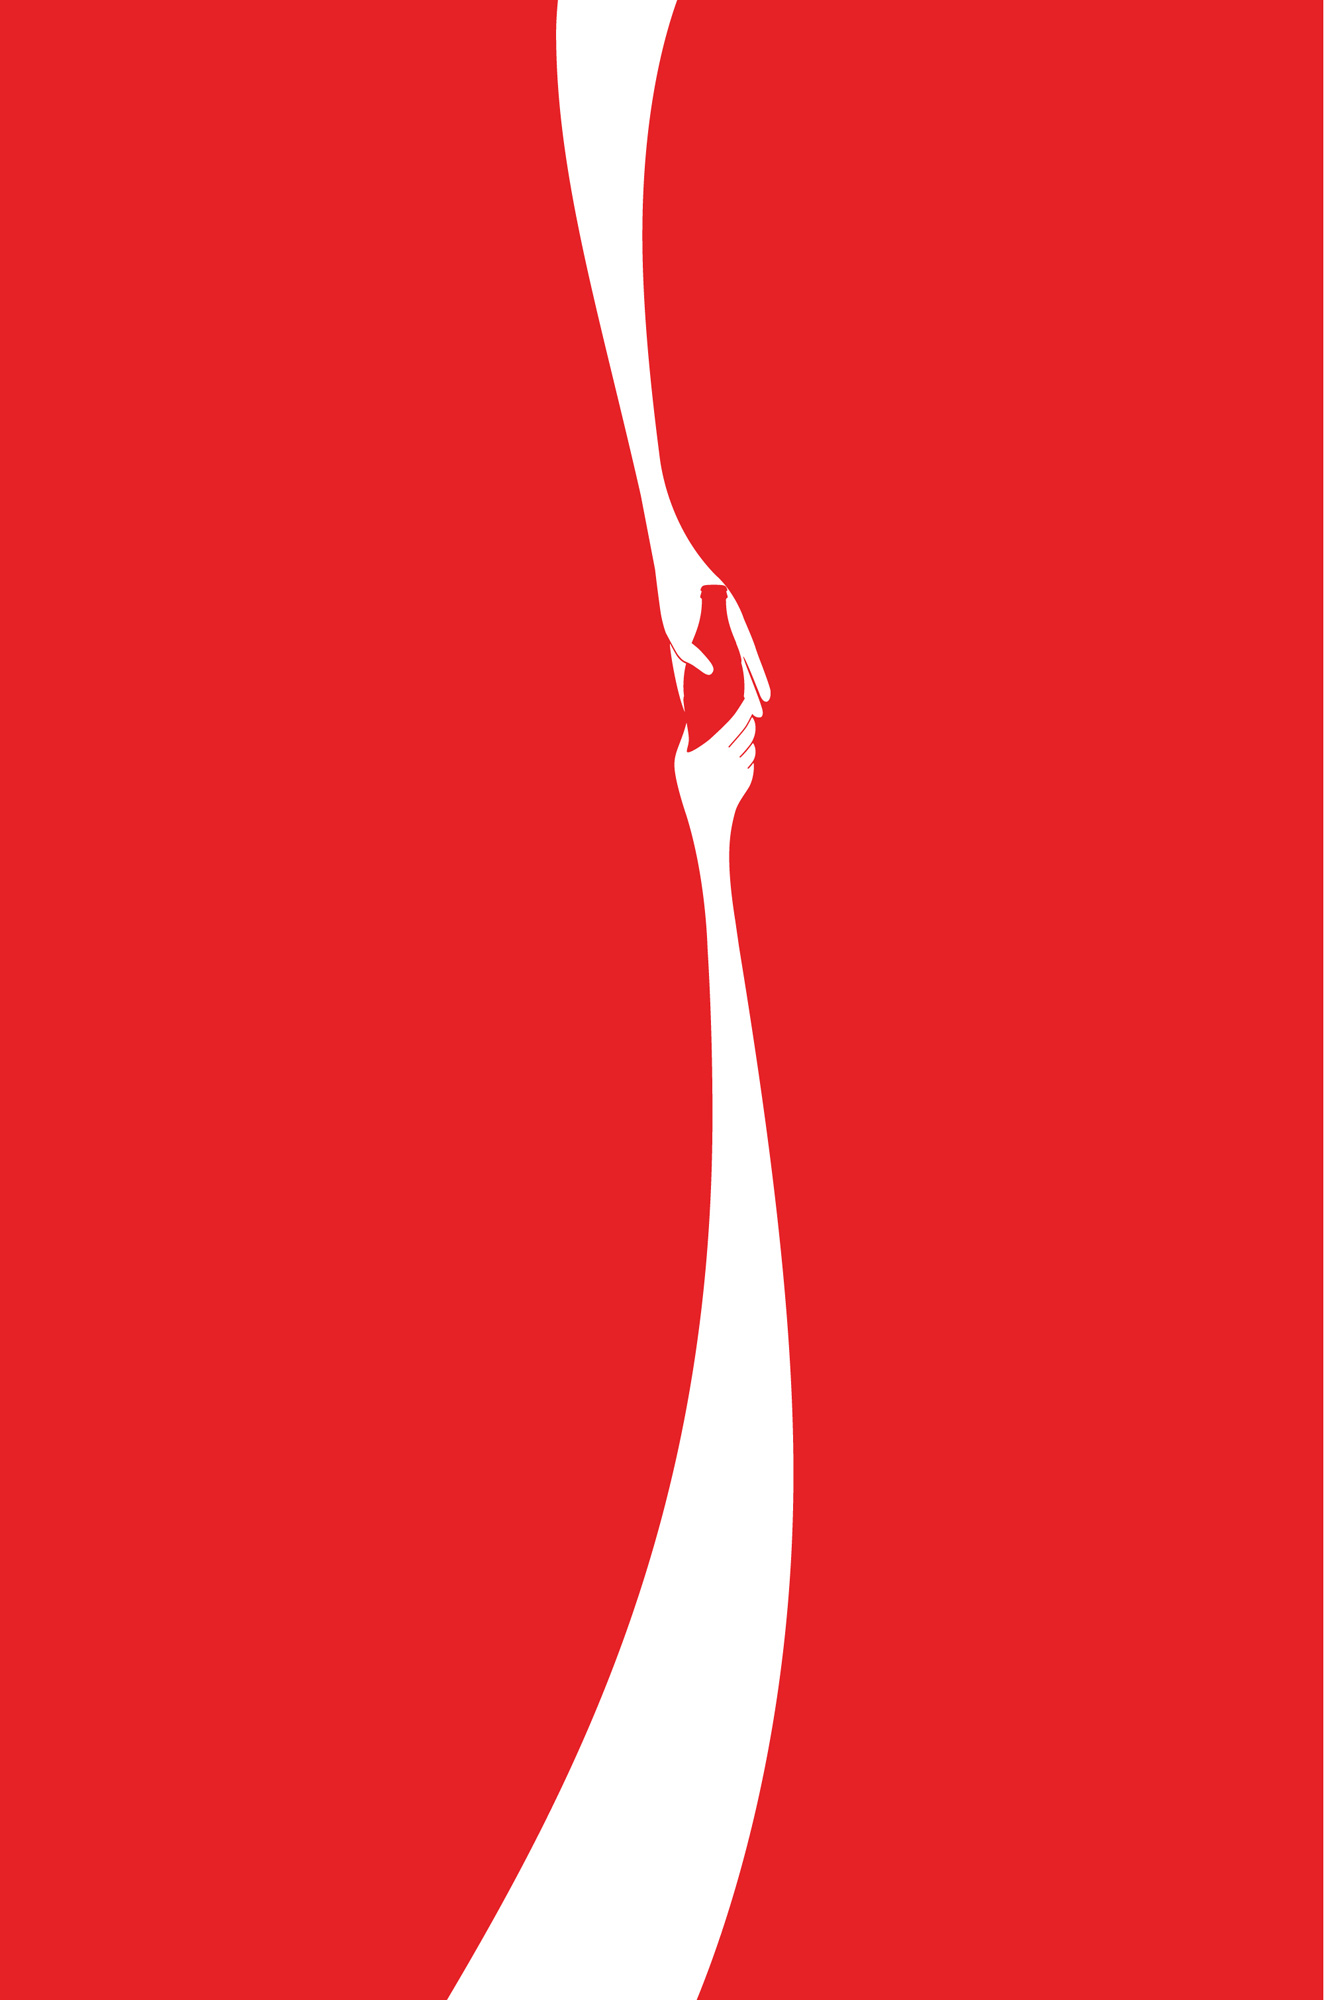 CocaCola_1.jpg